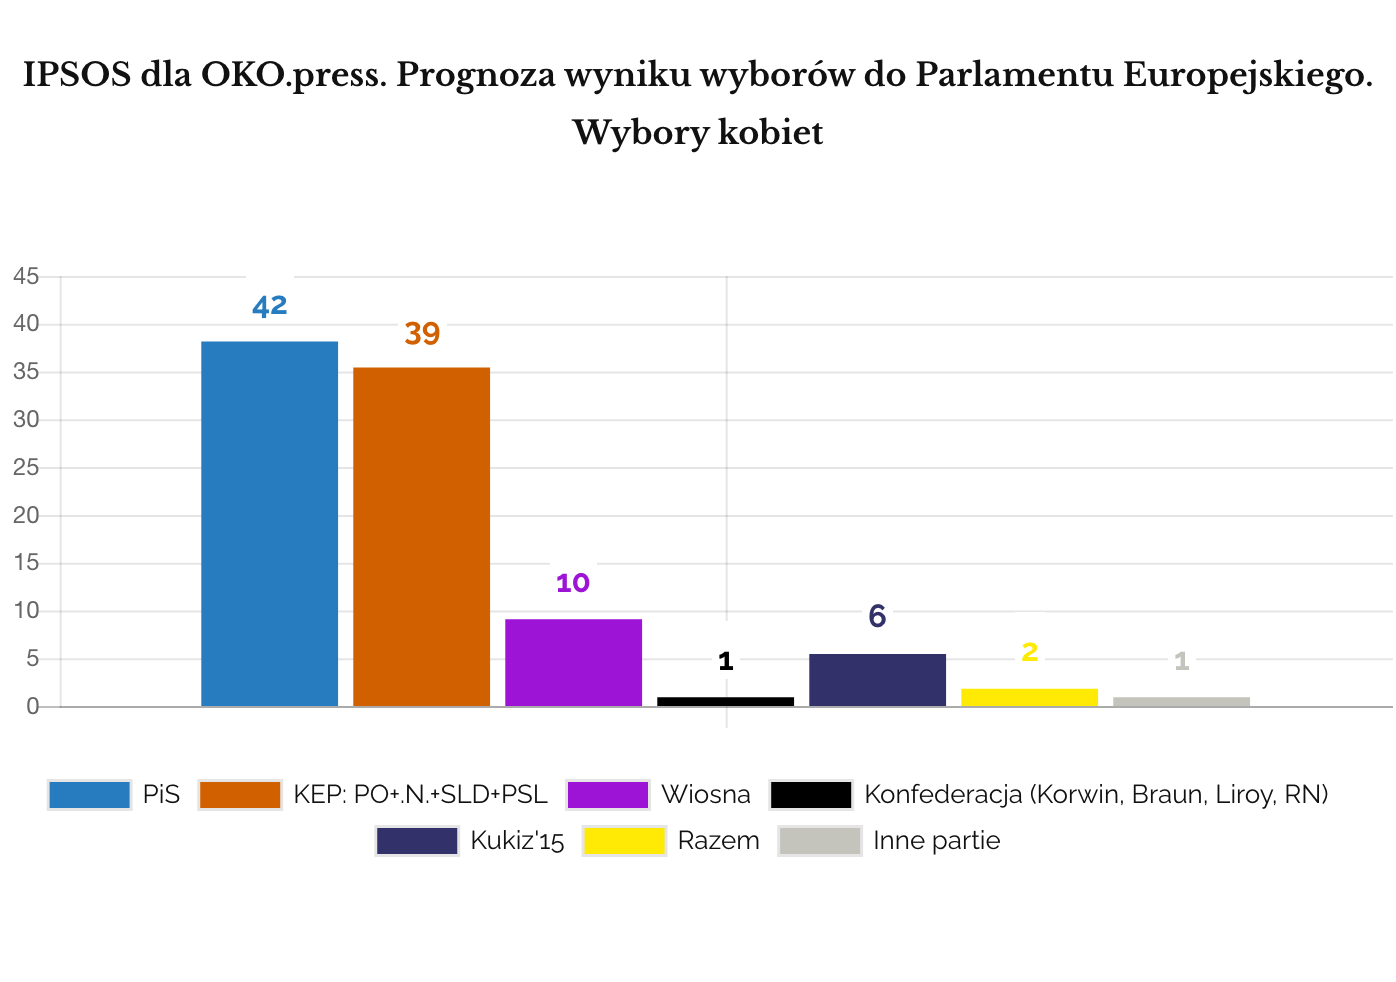 IPSOS 2019 maj Prognoza wyników eurowyborów. Odpowiedzi kobiet